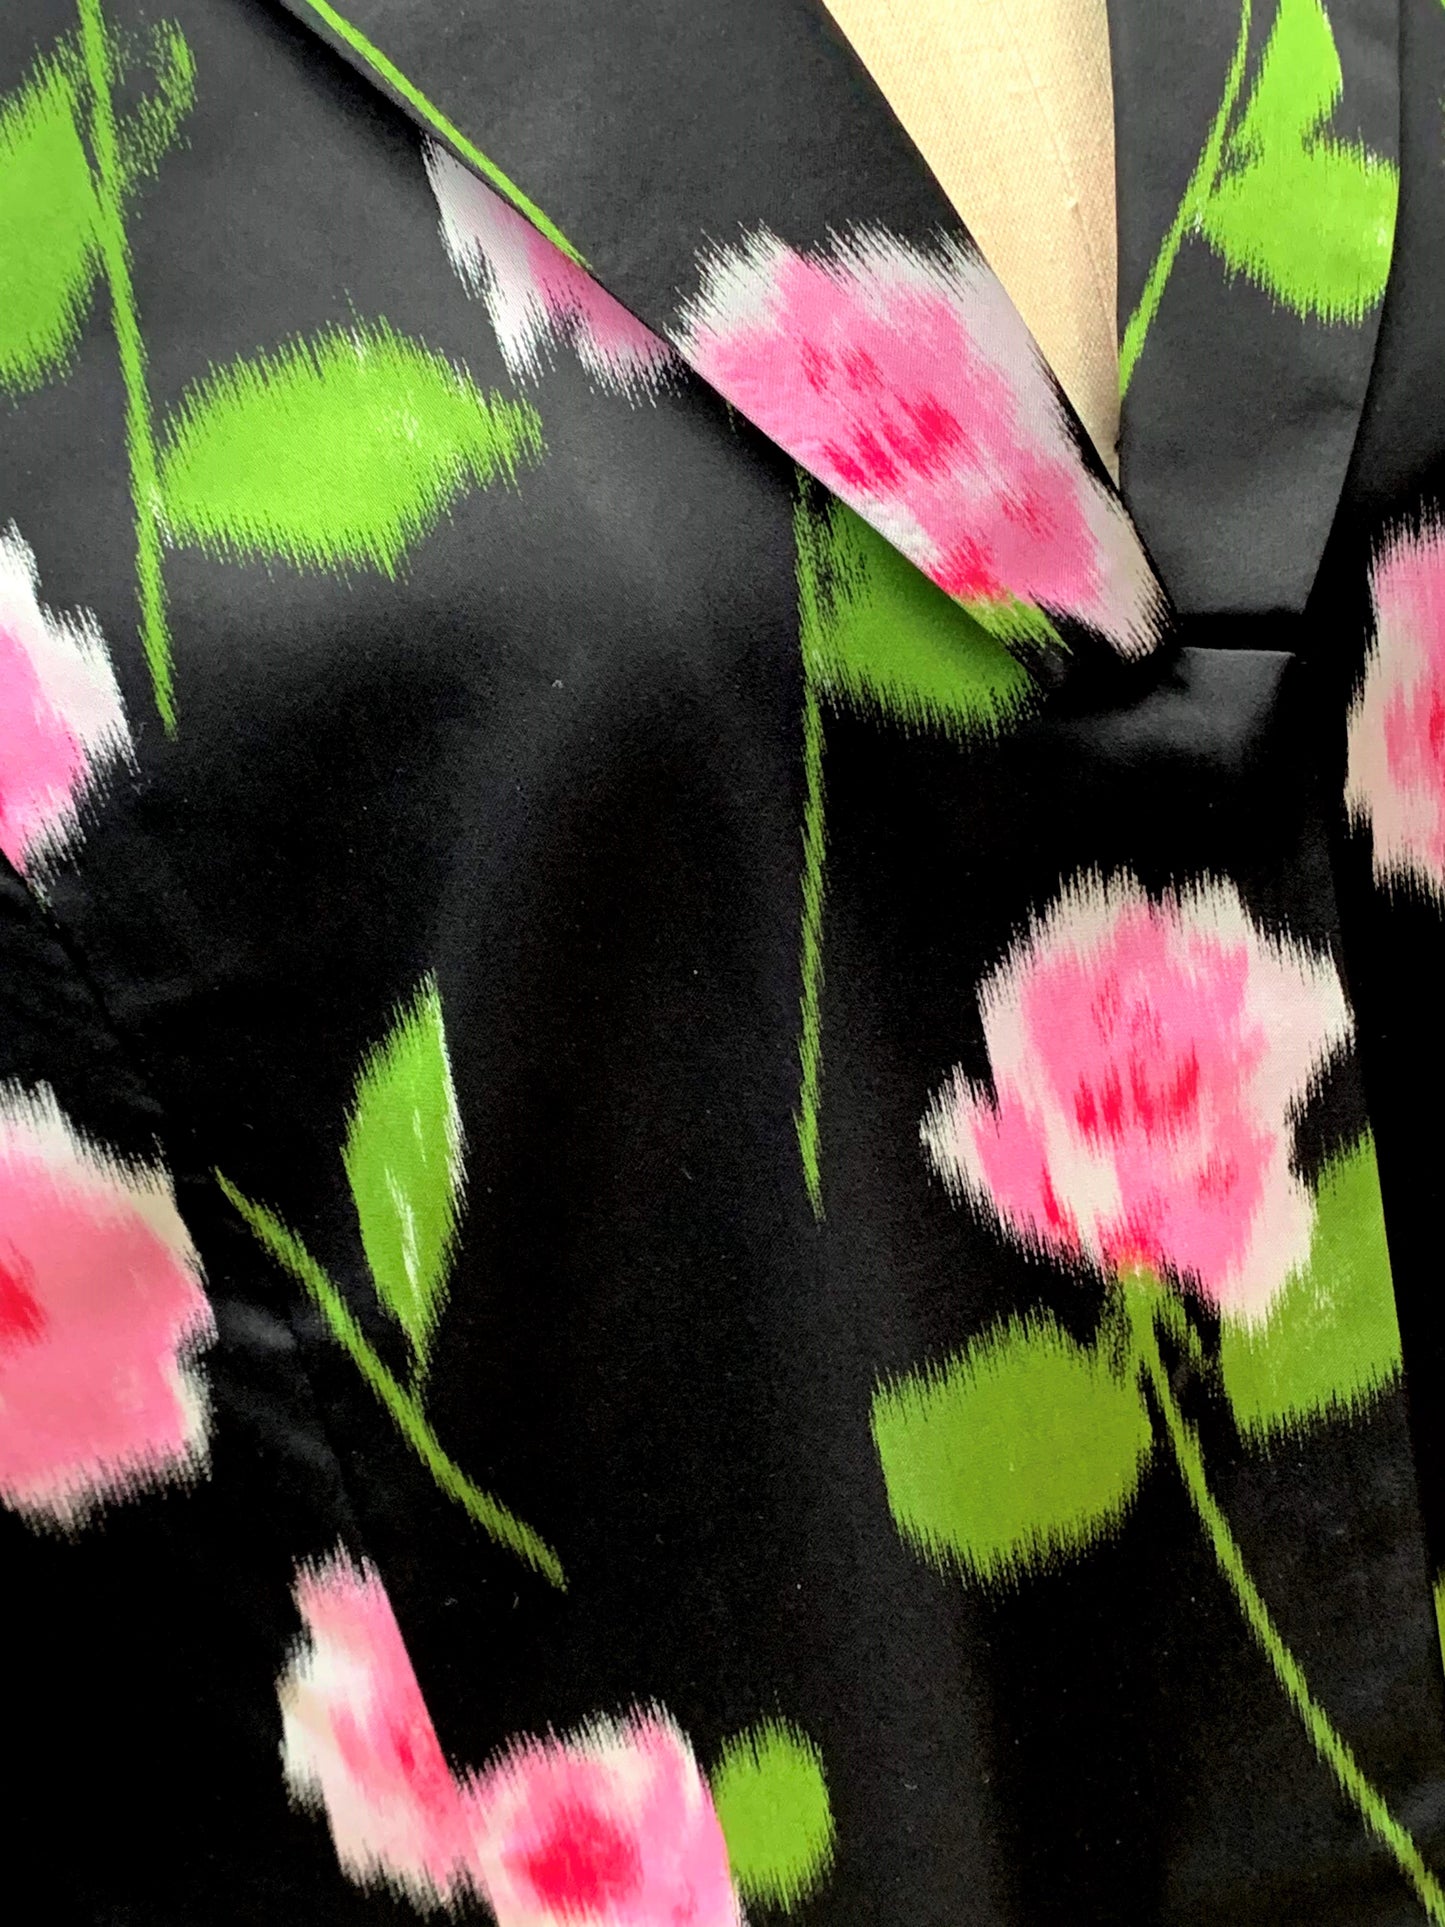 黑色和粉色花卉中长夹克